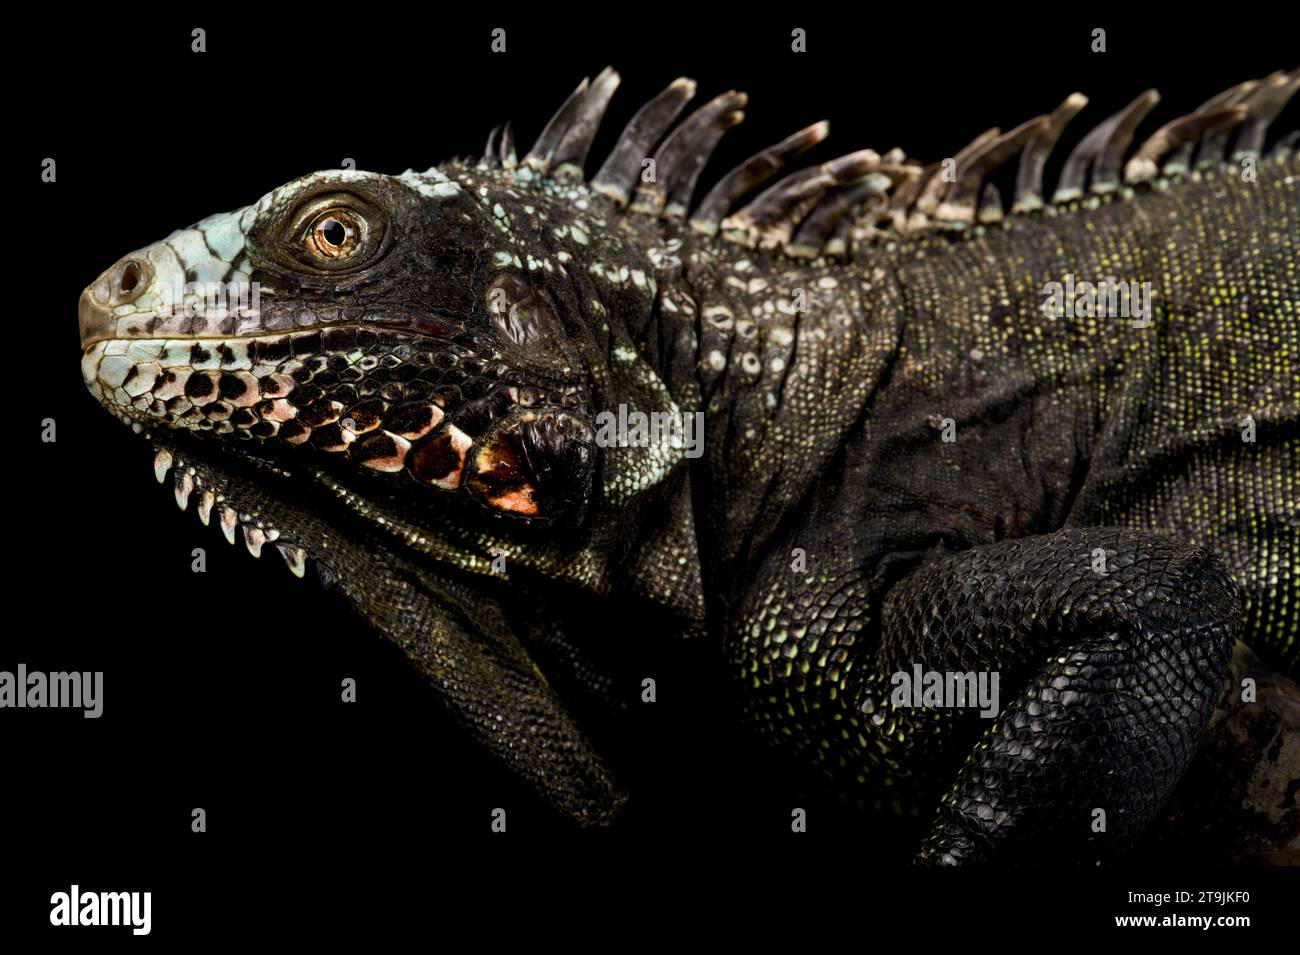 L'iguana nera di Sabah (Iguana melanoderma) è un iguanide a rischio critico proveniente dall'isola di Saba, parte delle Antille. Foto Stock